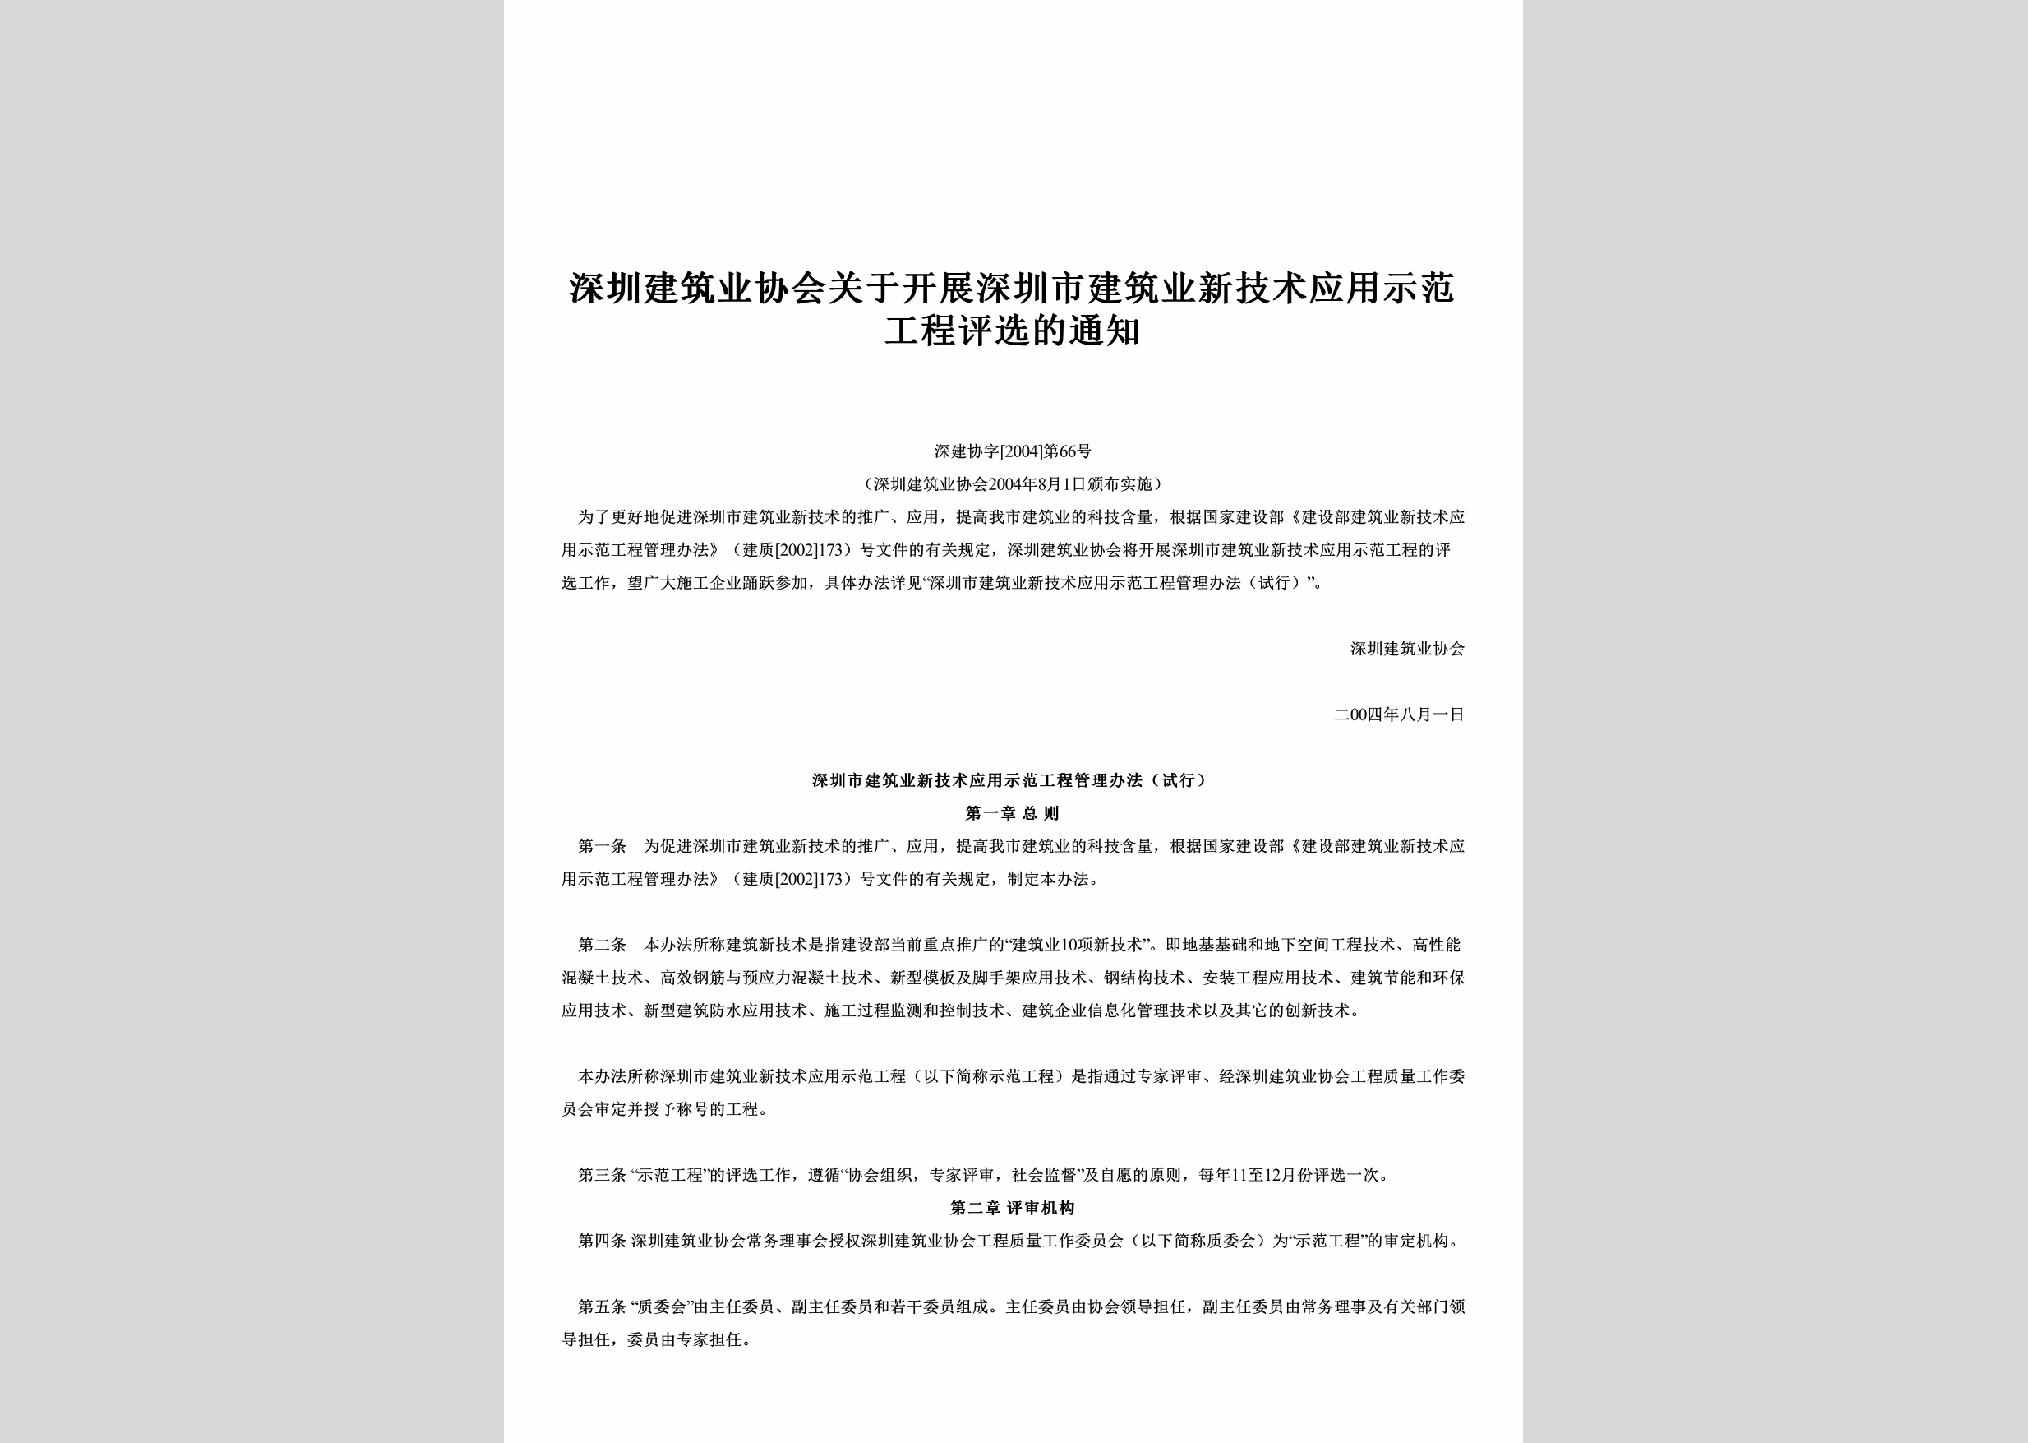 深建协字[2004]第66号：关于开展深圳市建筑业新技术应用示范工程评选的通知